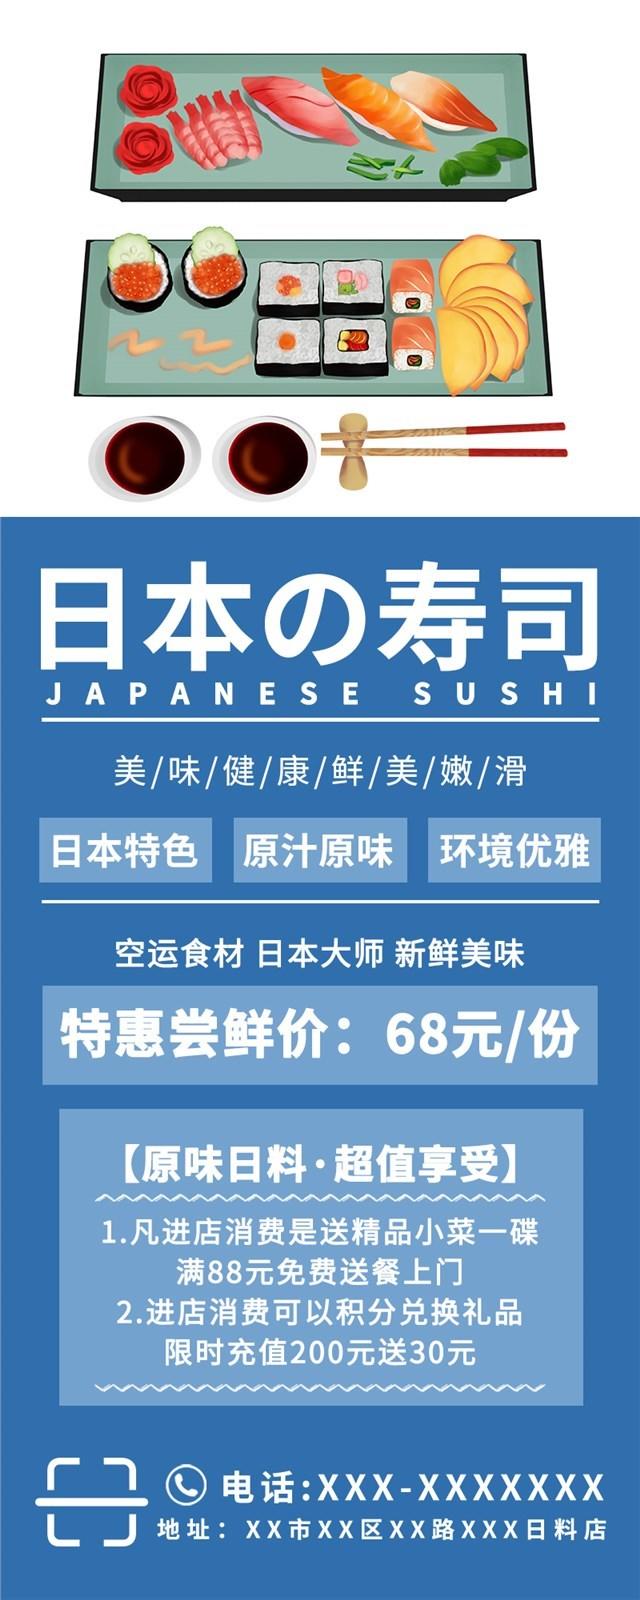 日料餐厅寿司海报